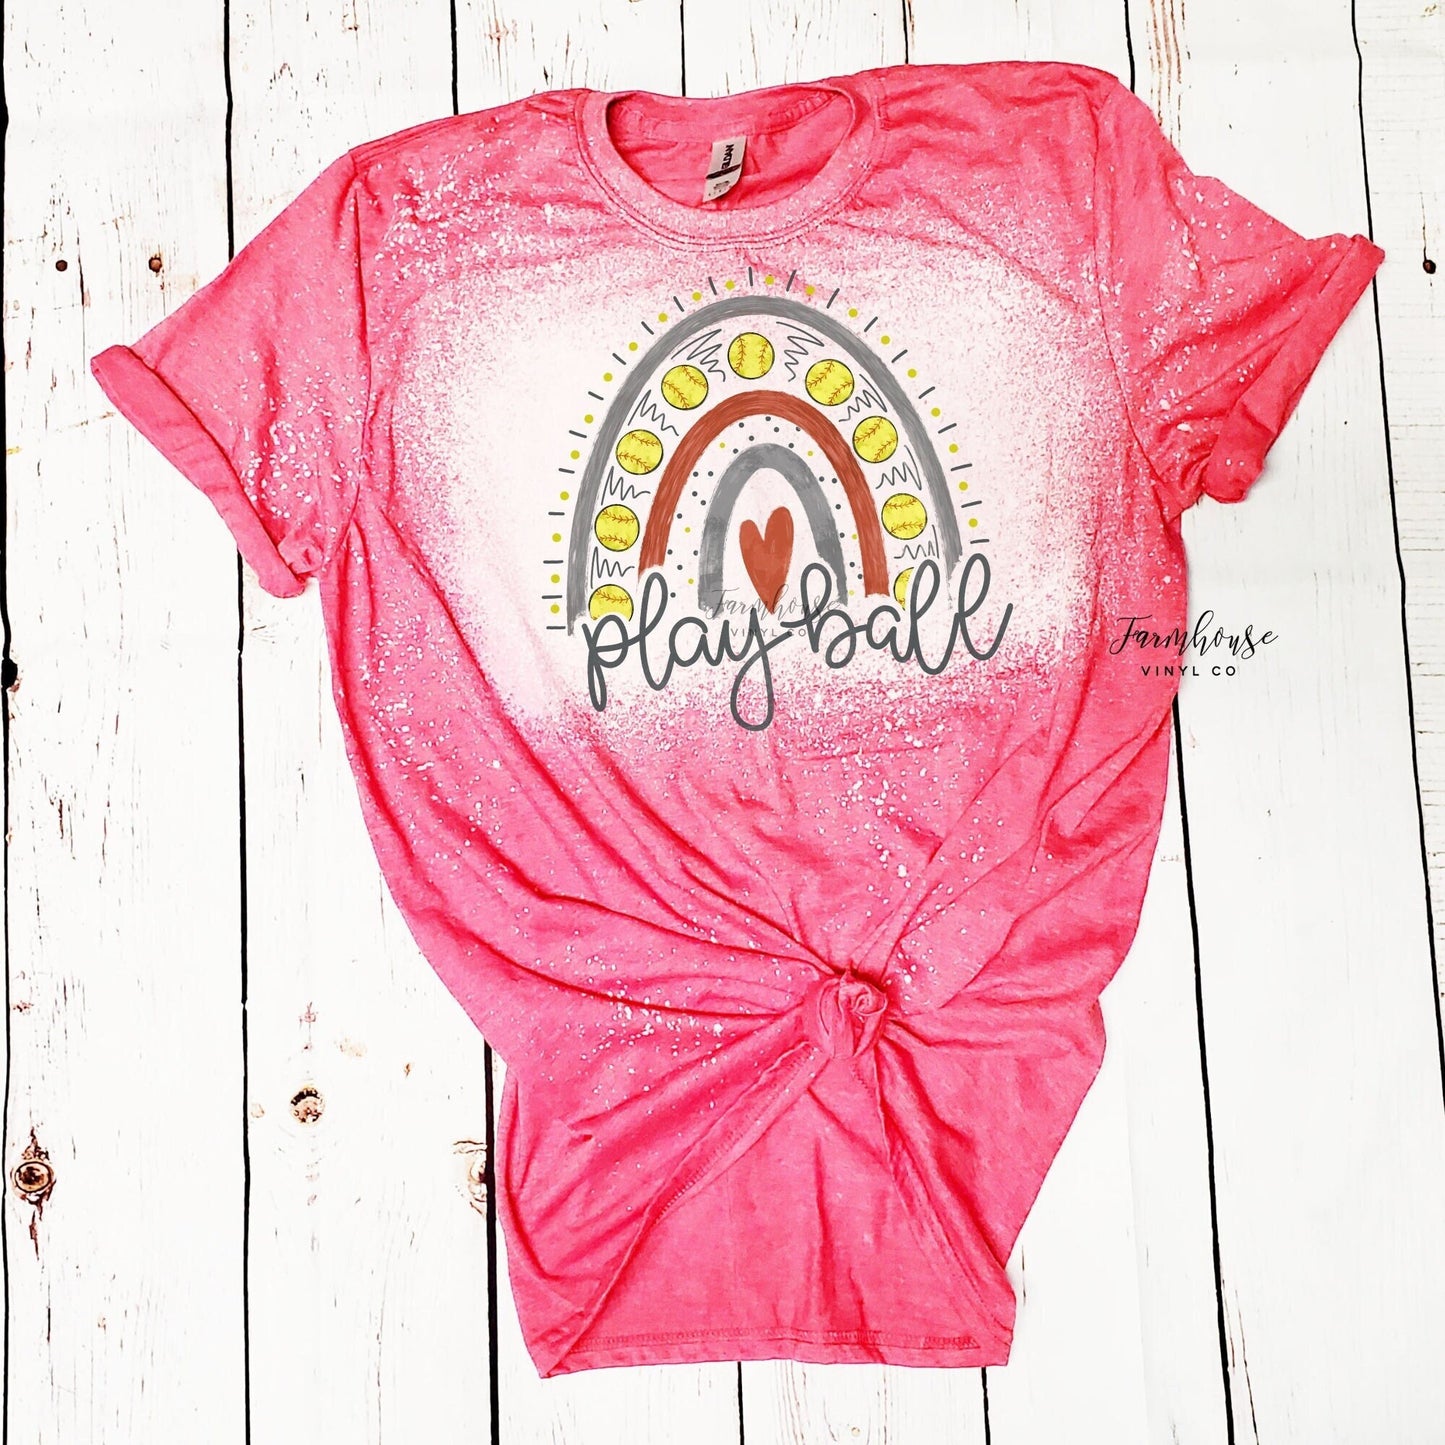 Playball Softball Rainbow Bleached Shirt - Farmhouse Vinyl Co